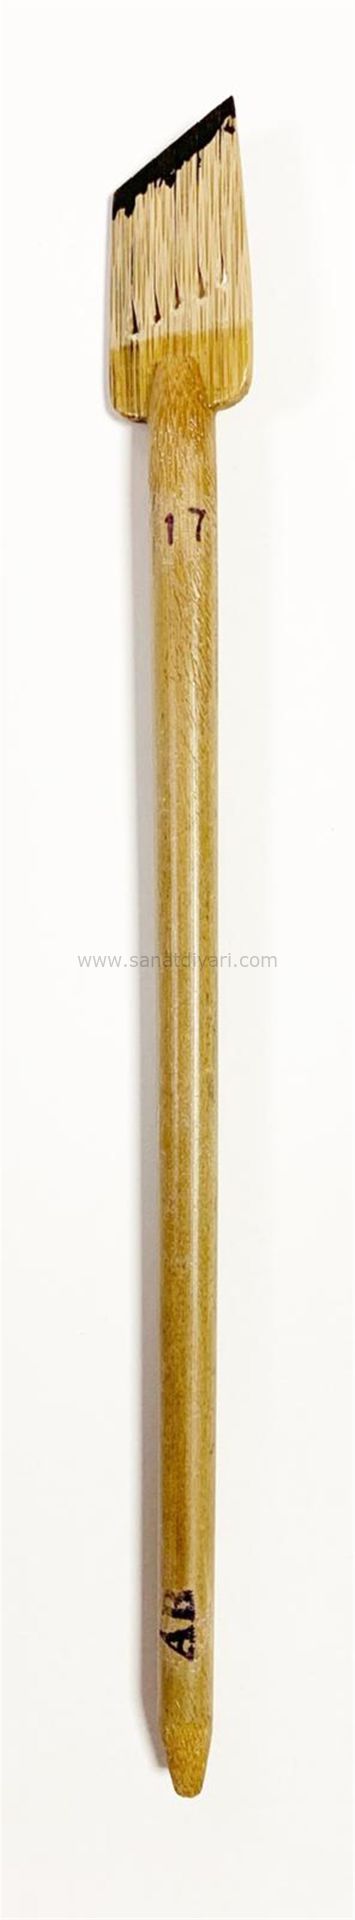 Tiryakiart Şaklı Bambu Kalem 17 mm